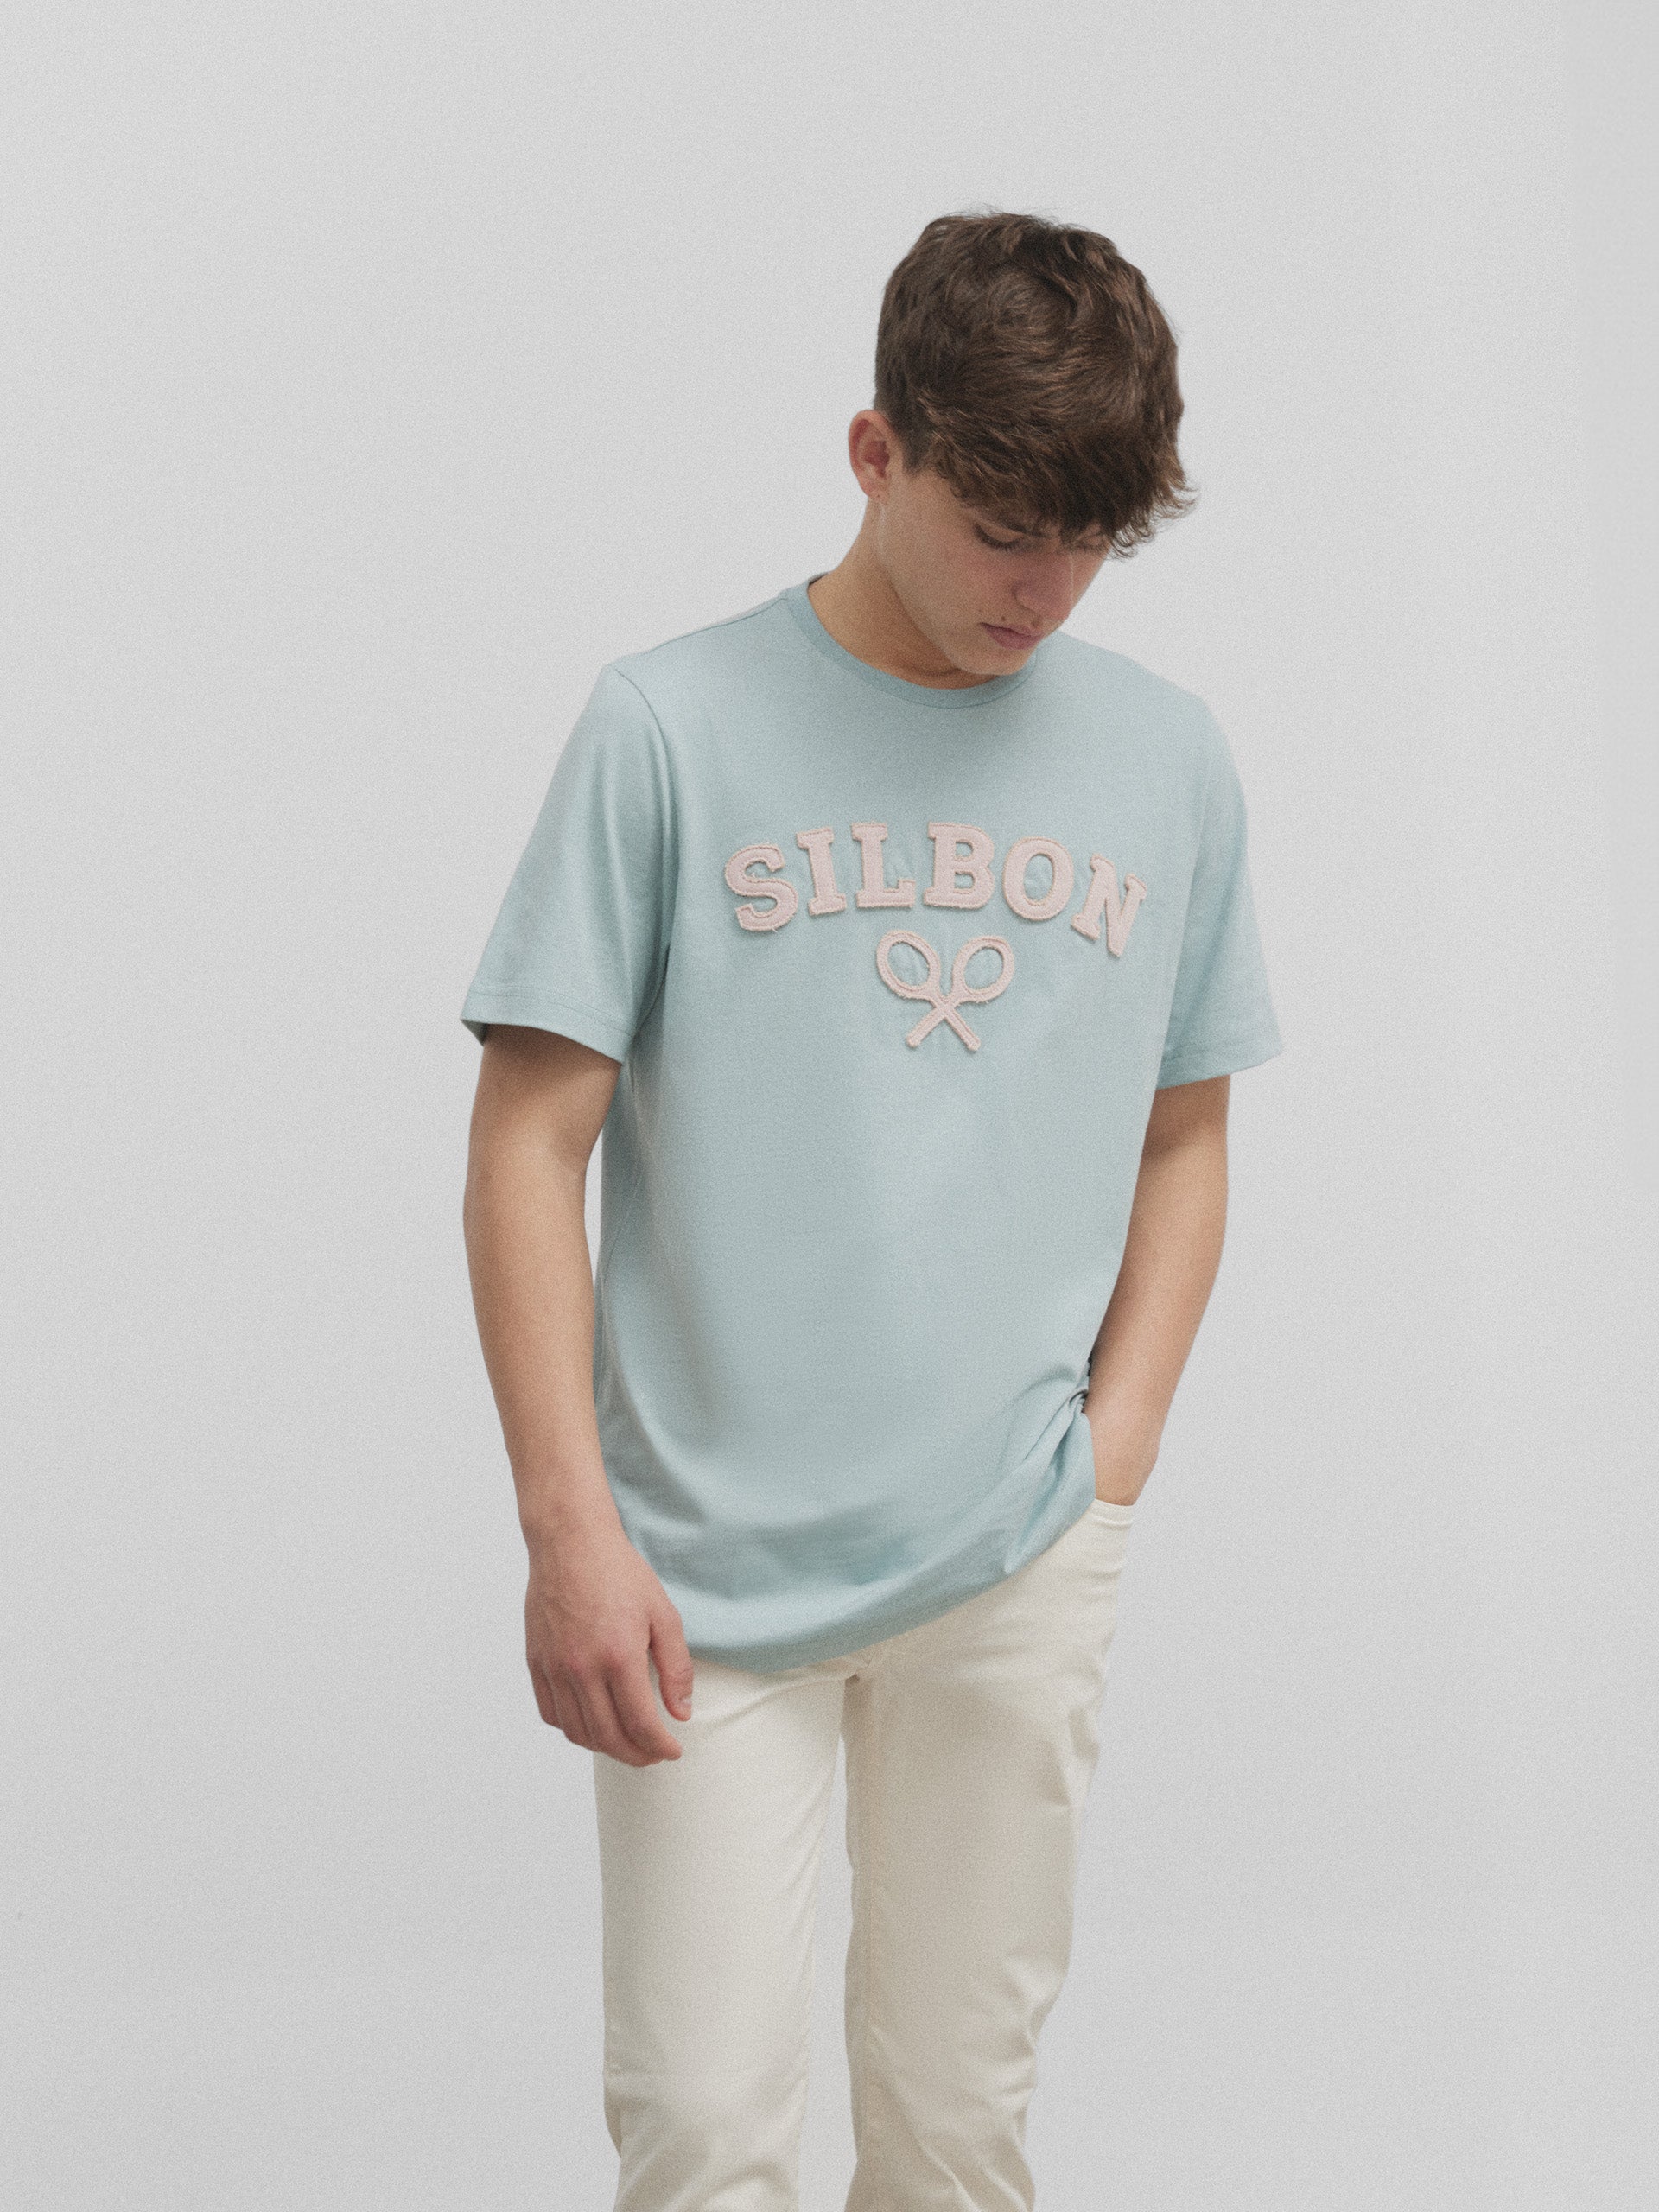 Silbon medium green racket t-shirt